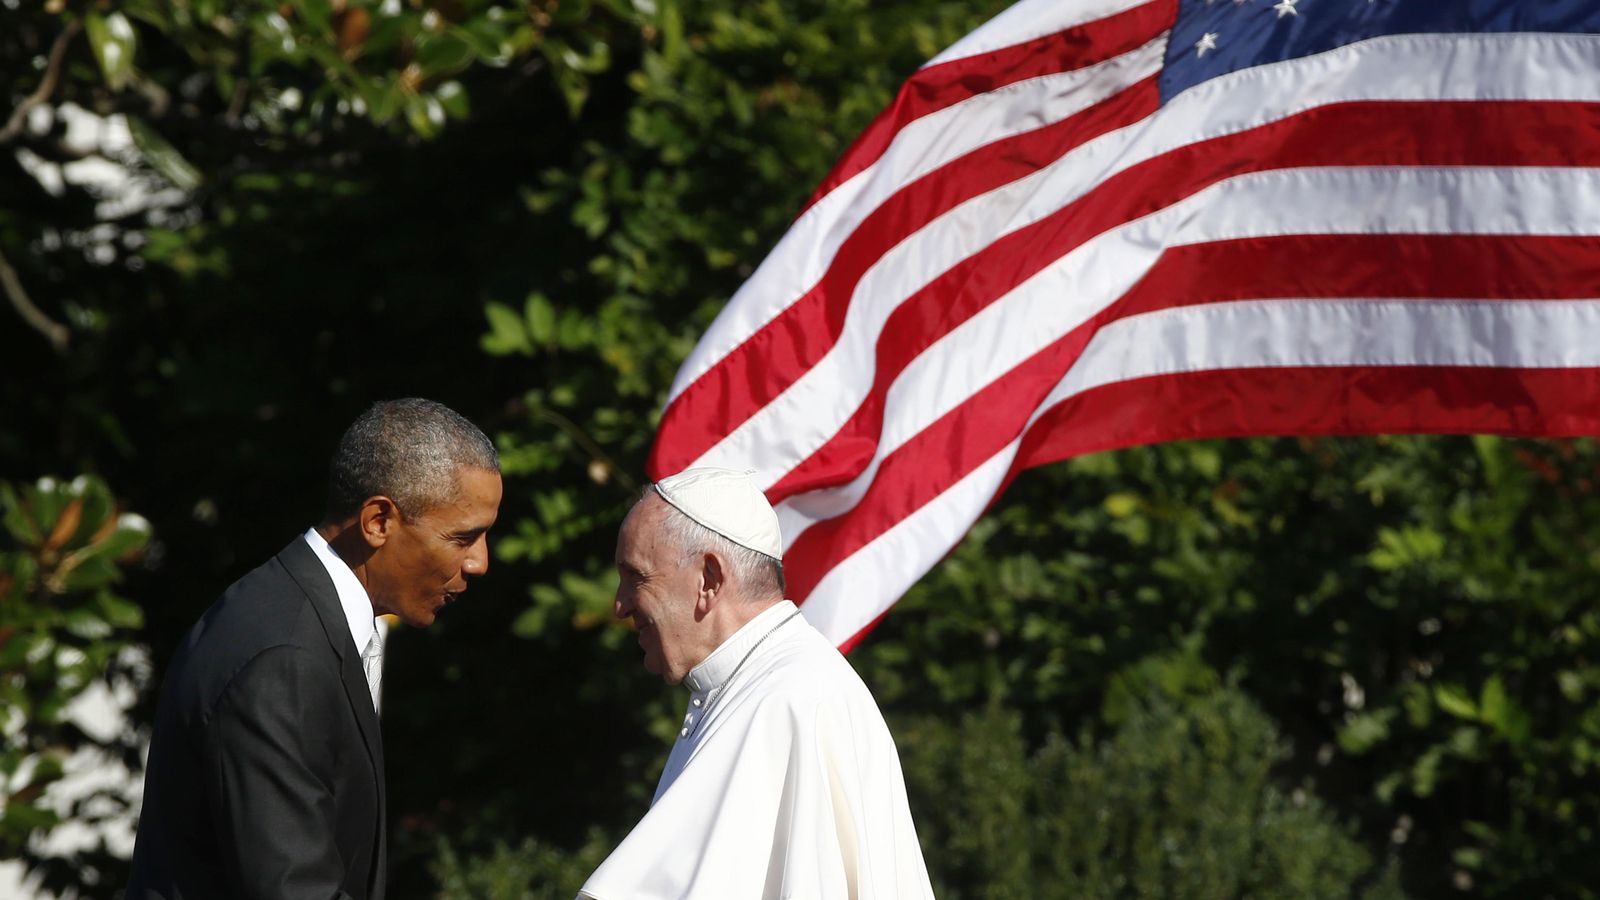 Foto: El presidente Barack Obama saluda al Papa Francisco durante una ceremonia de bienvenida en la Casa Blanca, Washington, el 23 de septiembre de 2015 (Reuters).